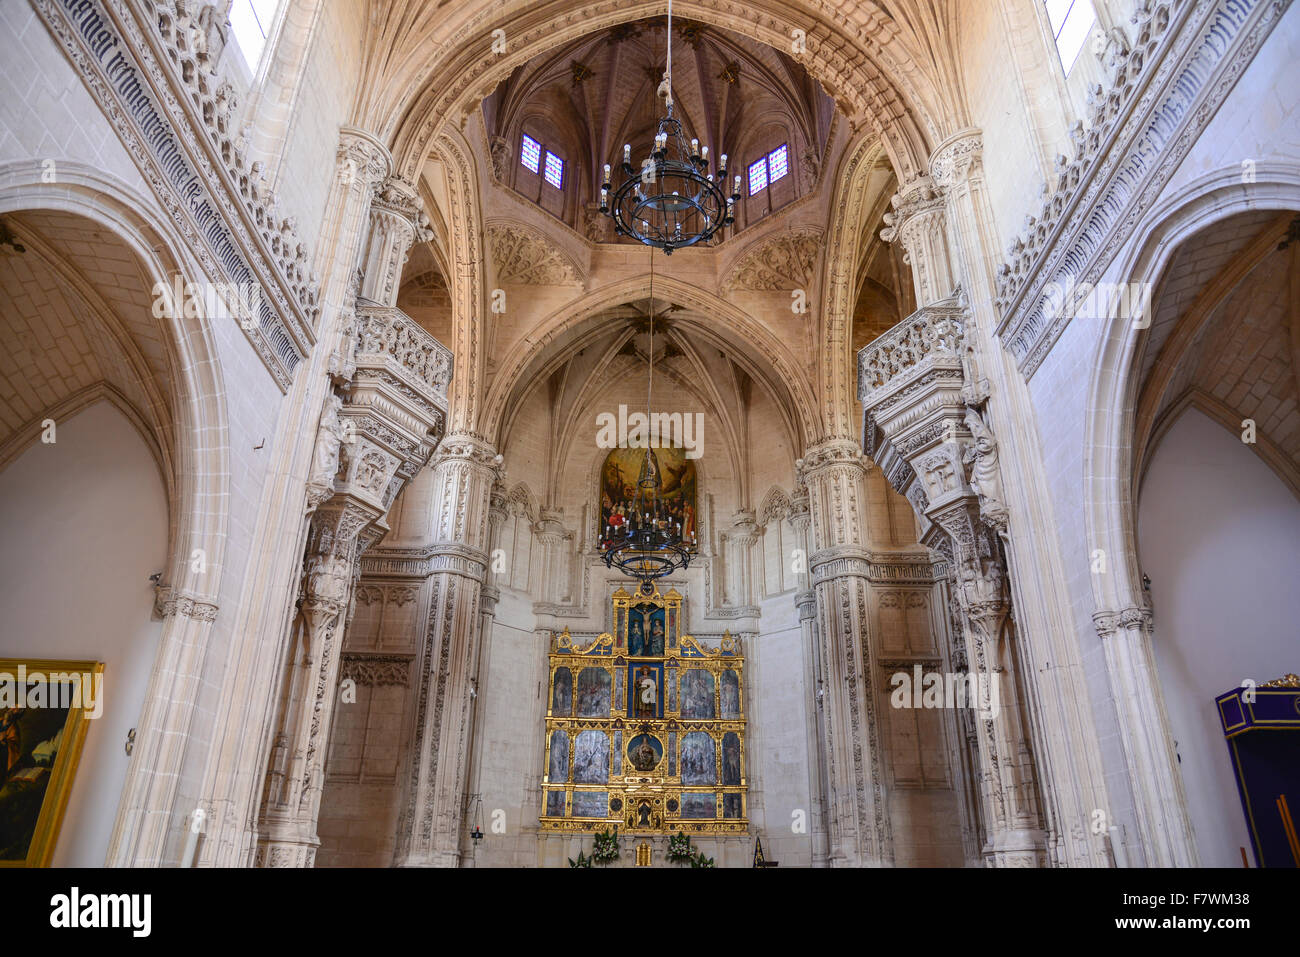 Interior of Monasterio de San Juan de los Reyes, Toledo, Spain Stock Photo